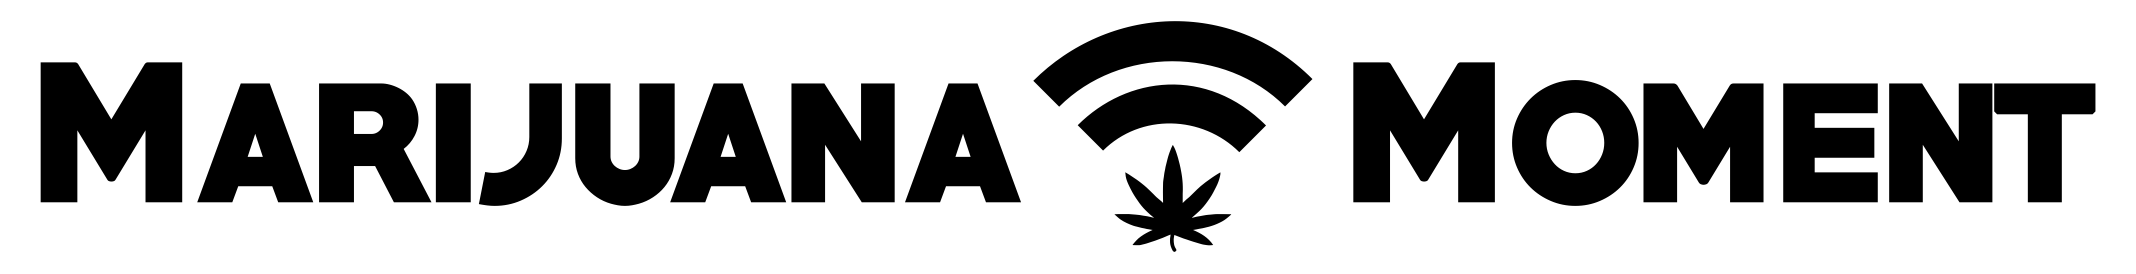 Marijuana Moment logo